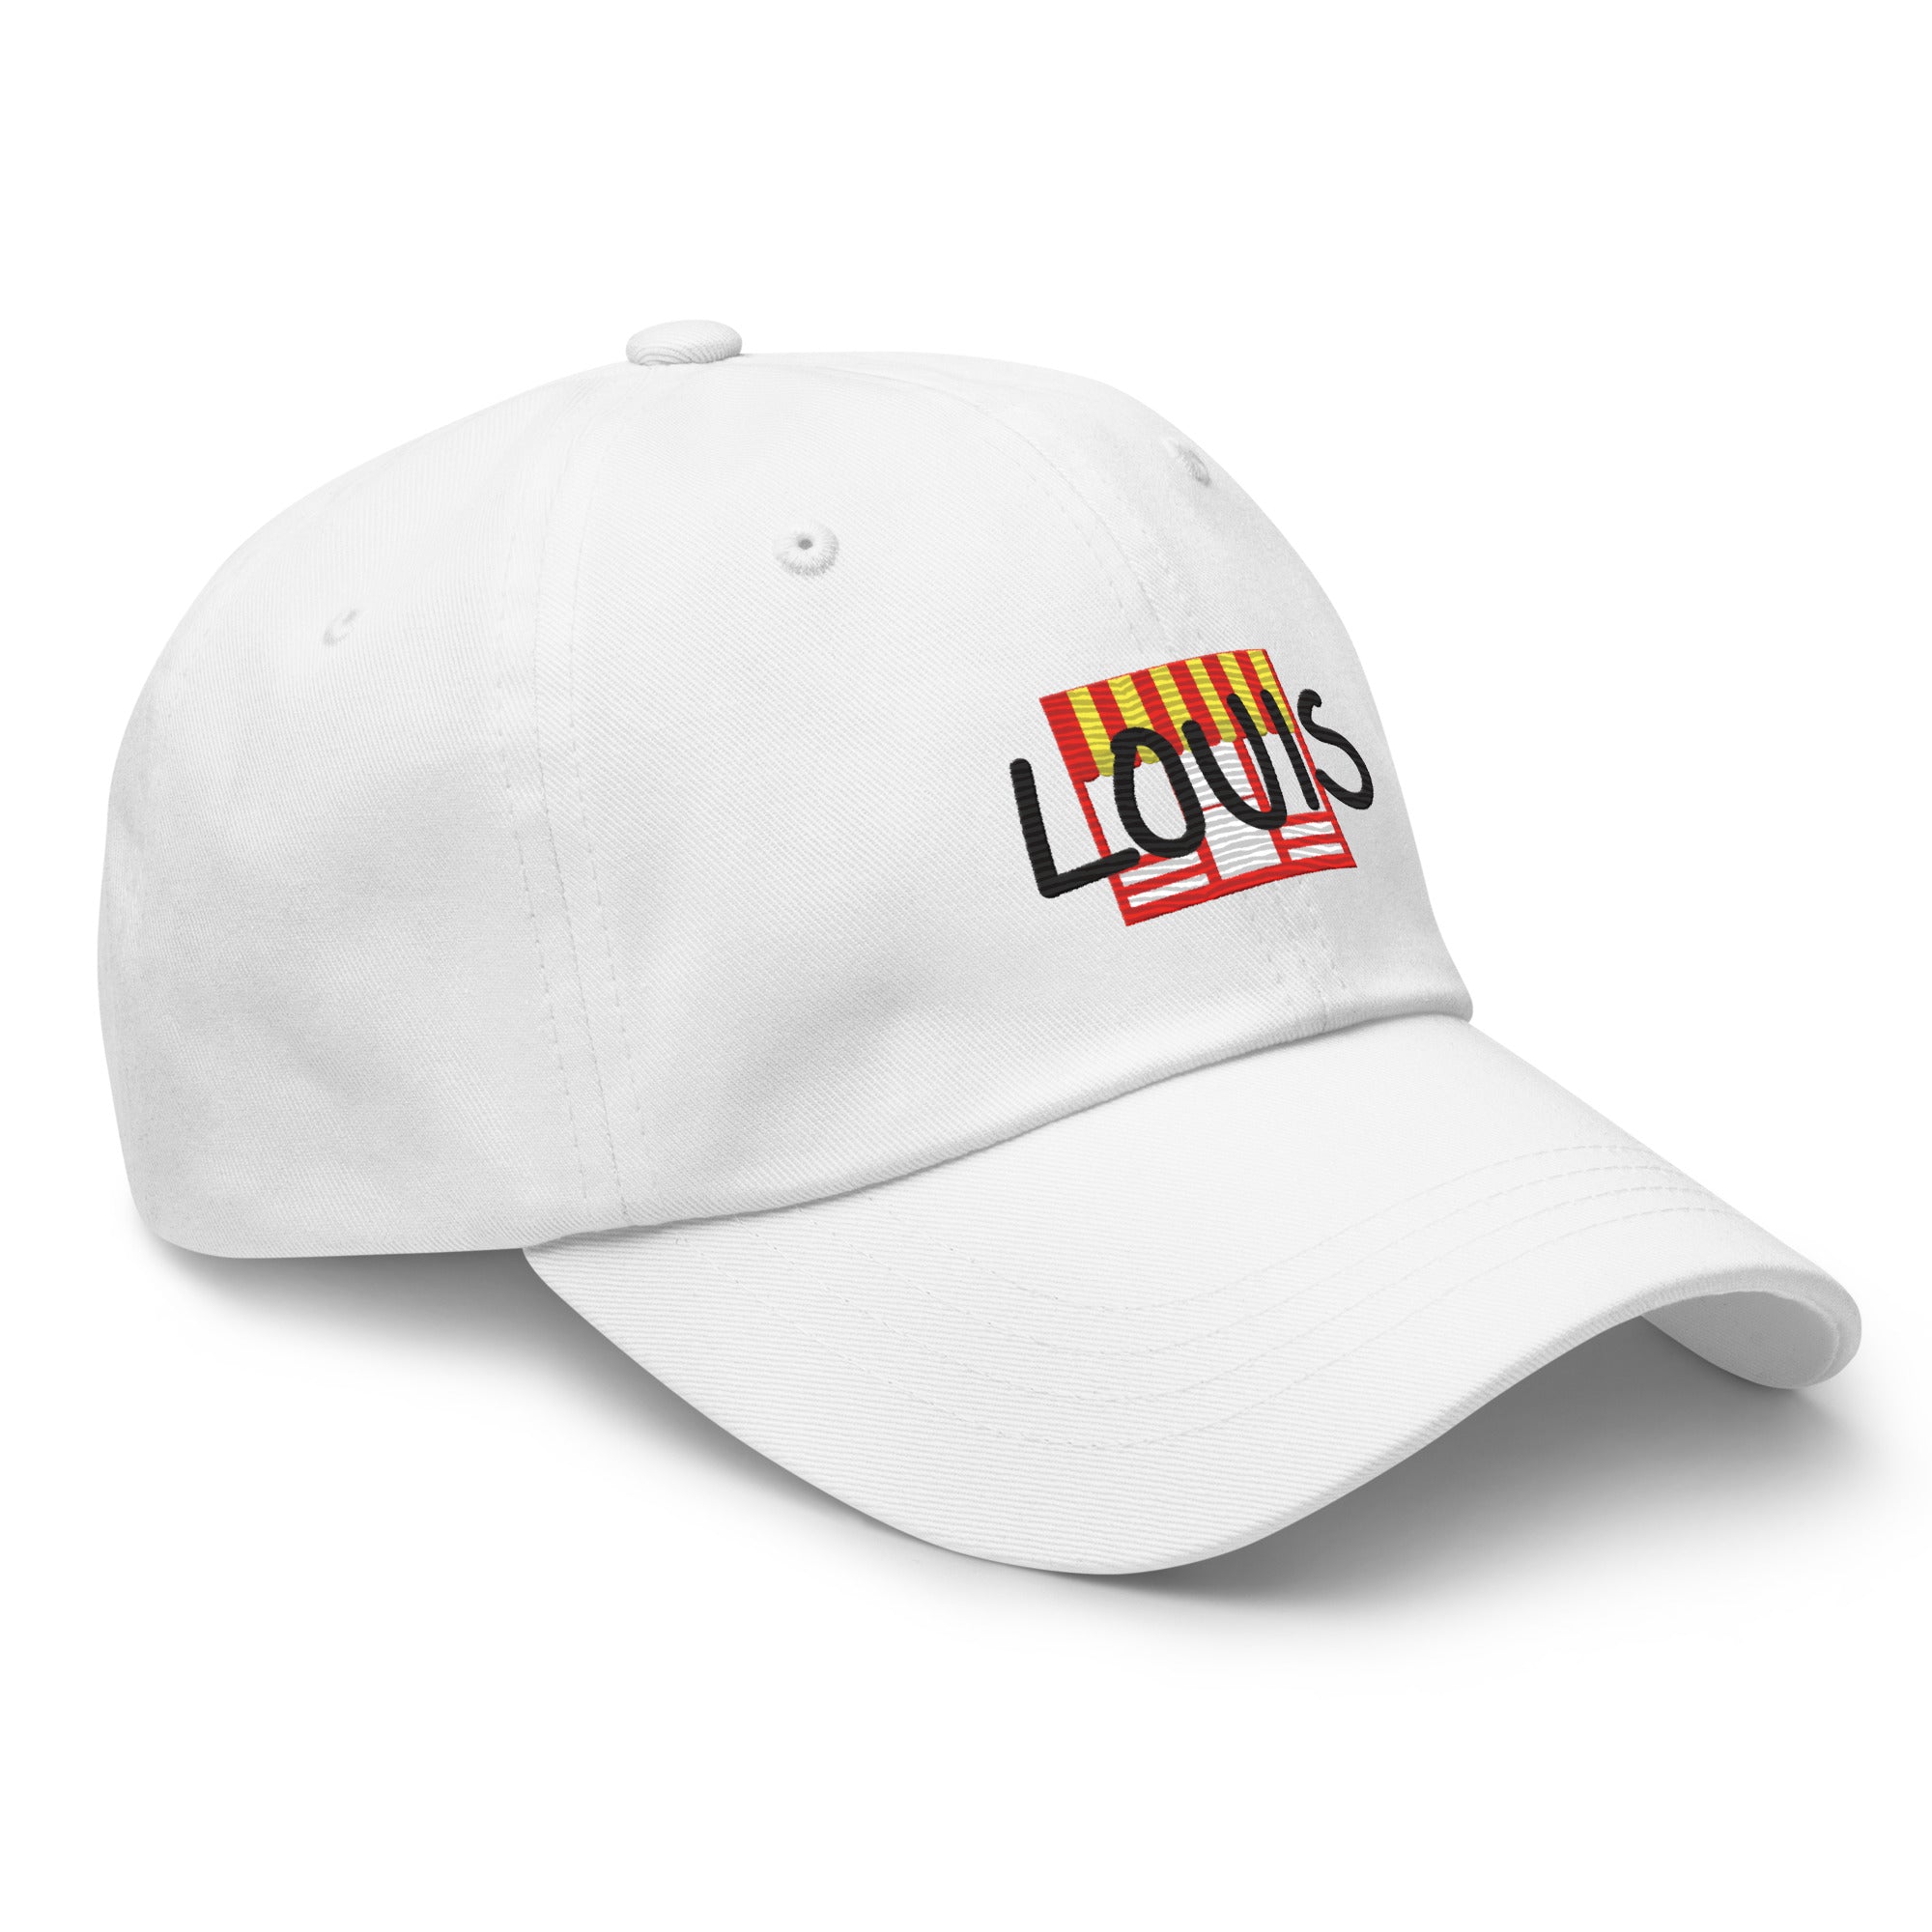 Louis Collegiate Dad hat in White